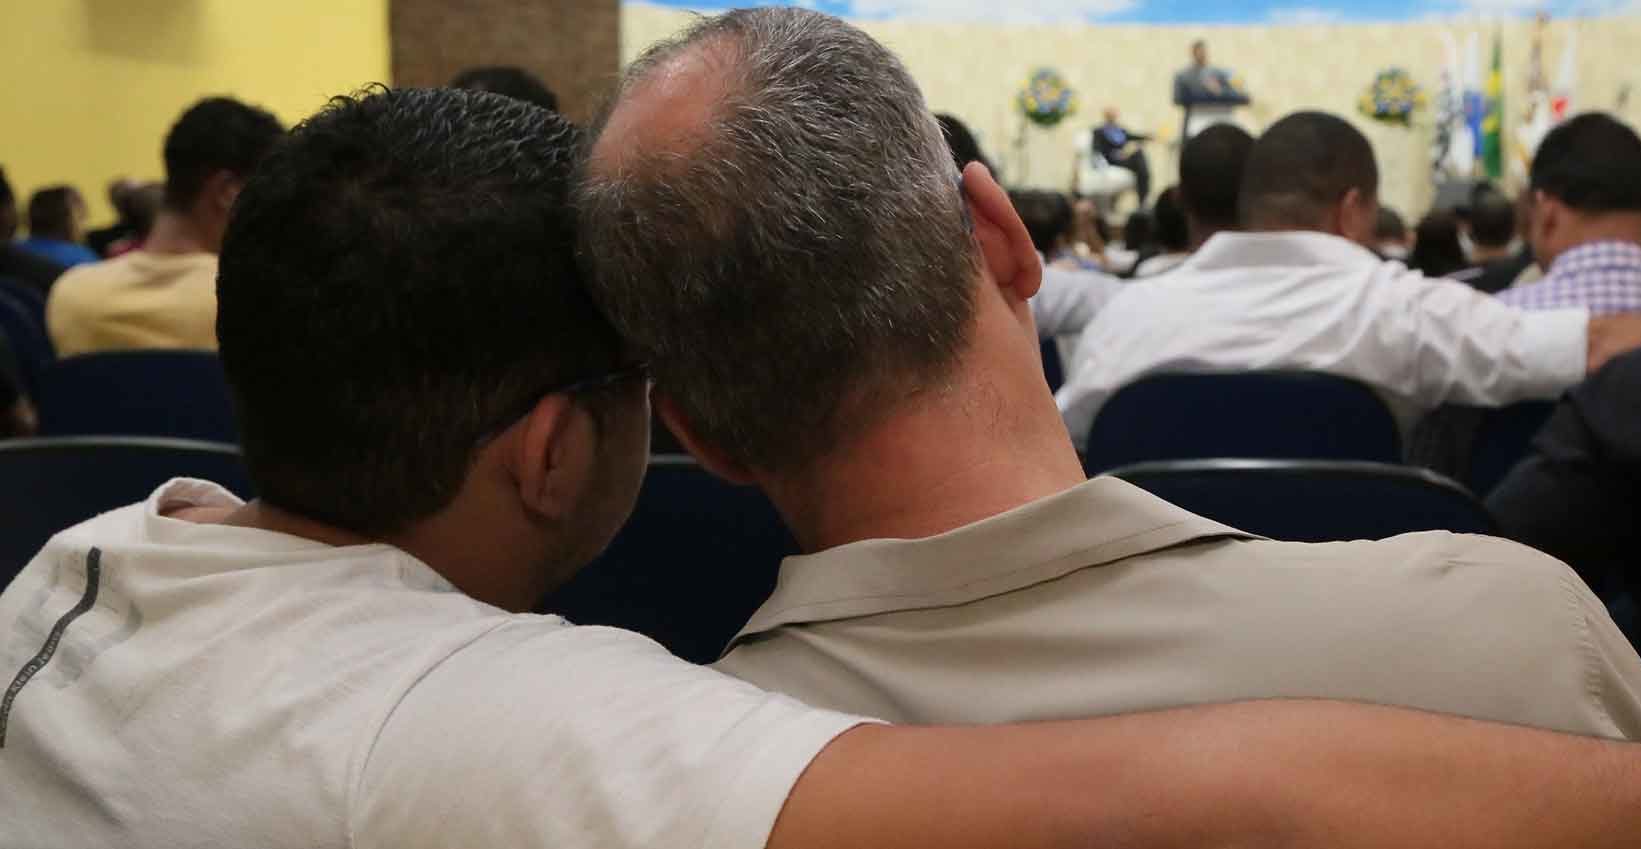 Igreja Cristã Contemporânea no Rio, foi a primeira a aceitar homossexuais nos cultos